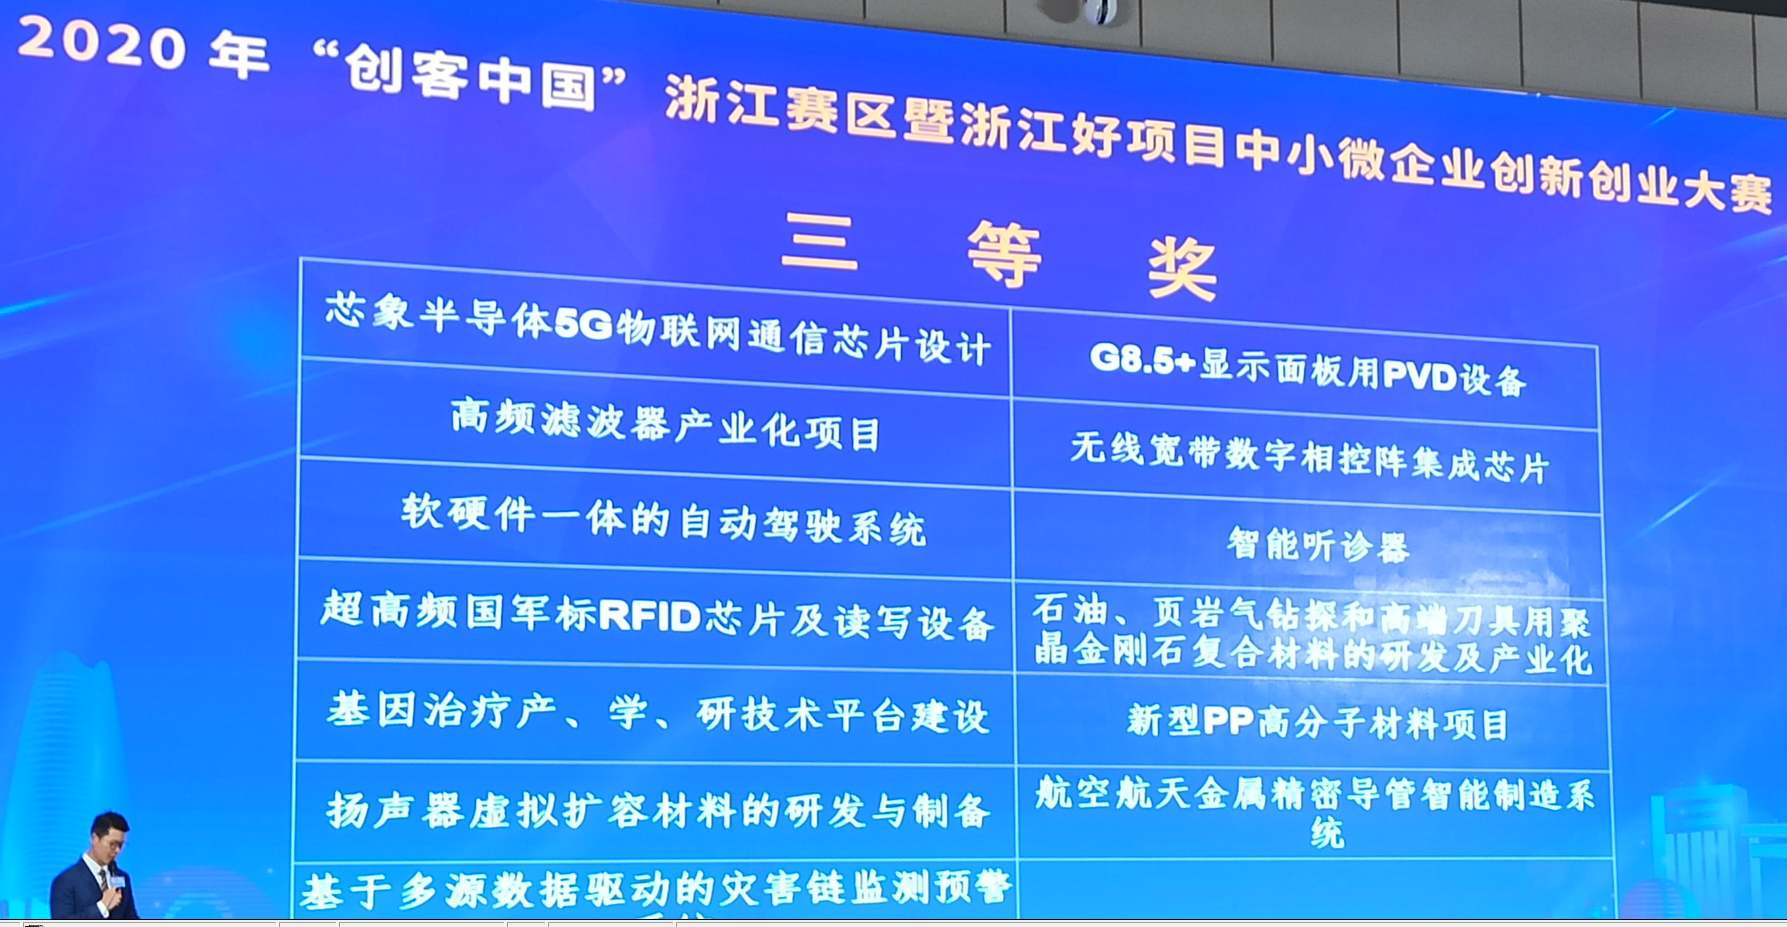 芯象半导体荣获2020创客中国浙江省总决赛三等奖第一名